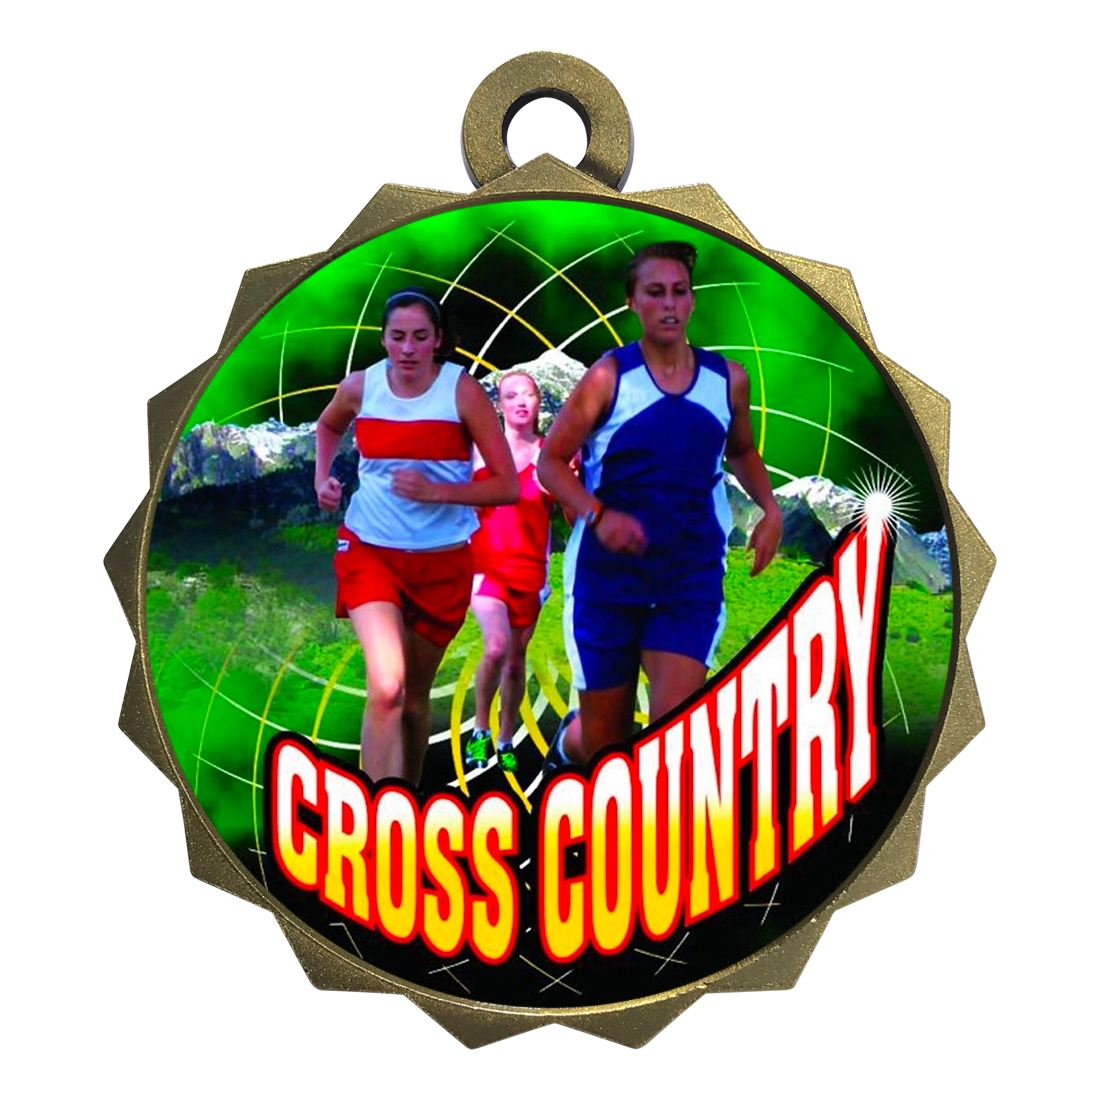 2-1/4" Female Cross Country Medal